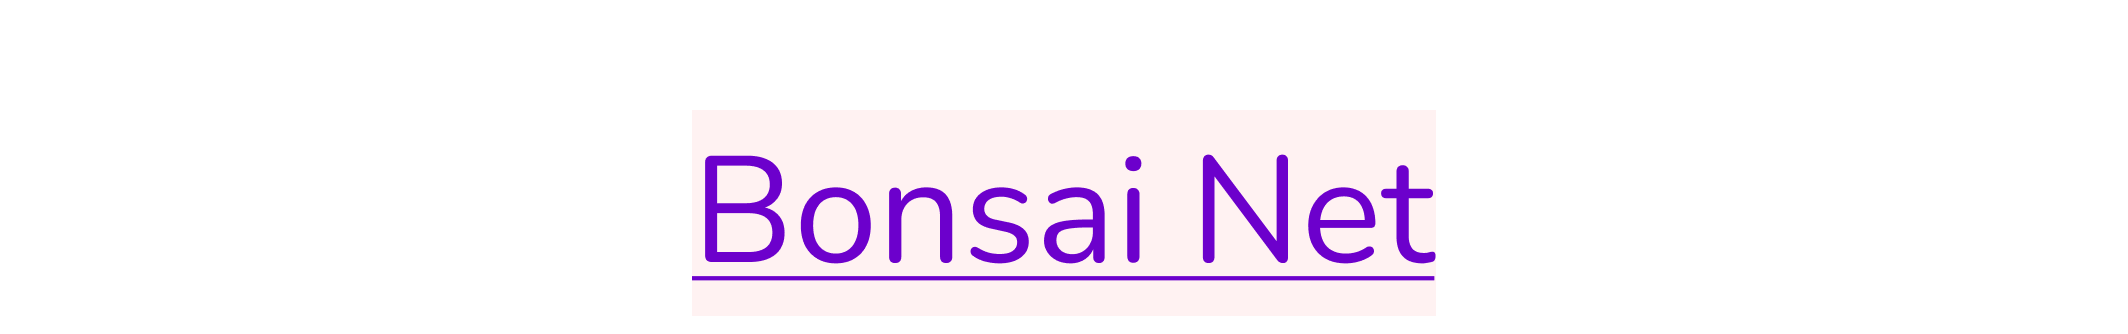 Bonsai Net